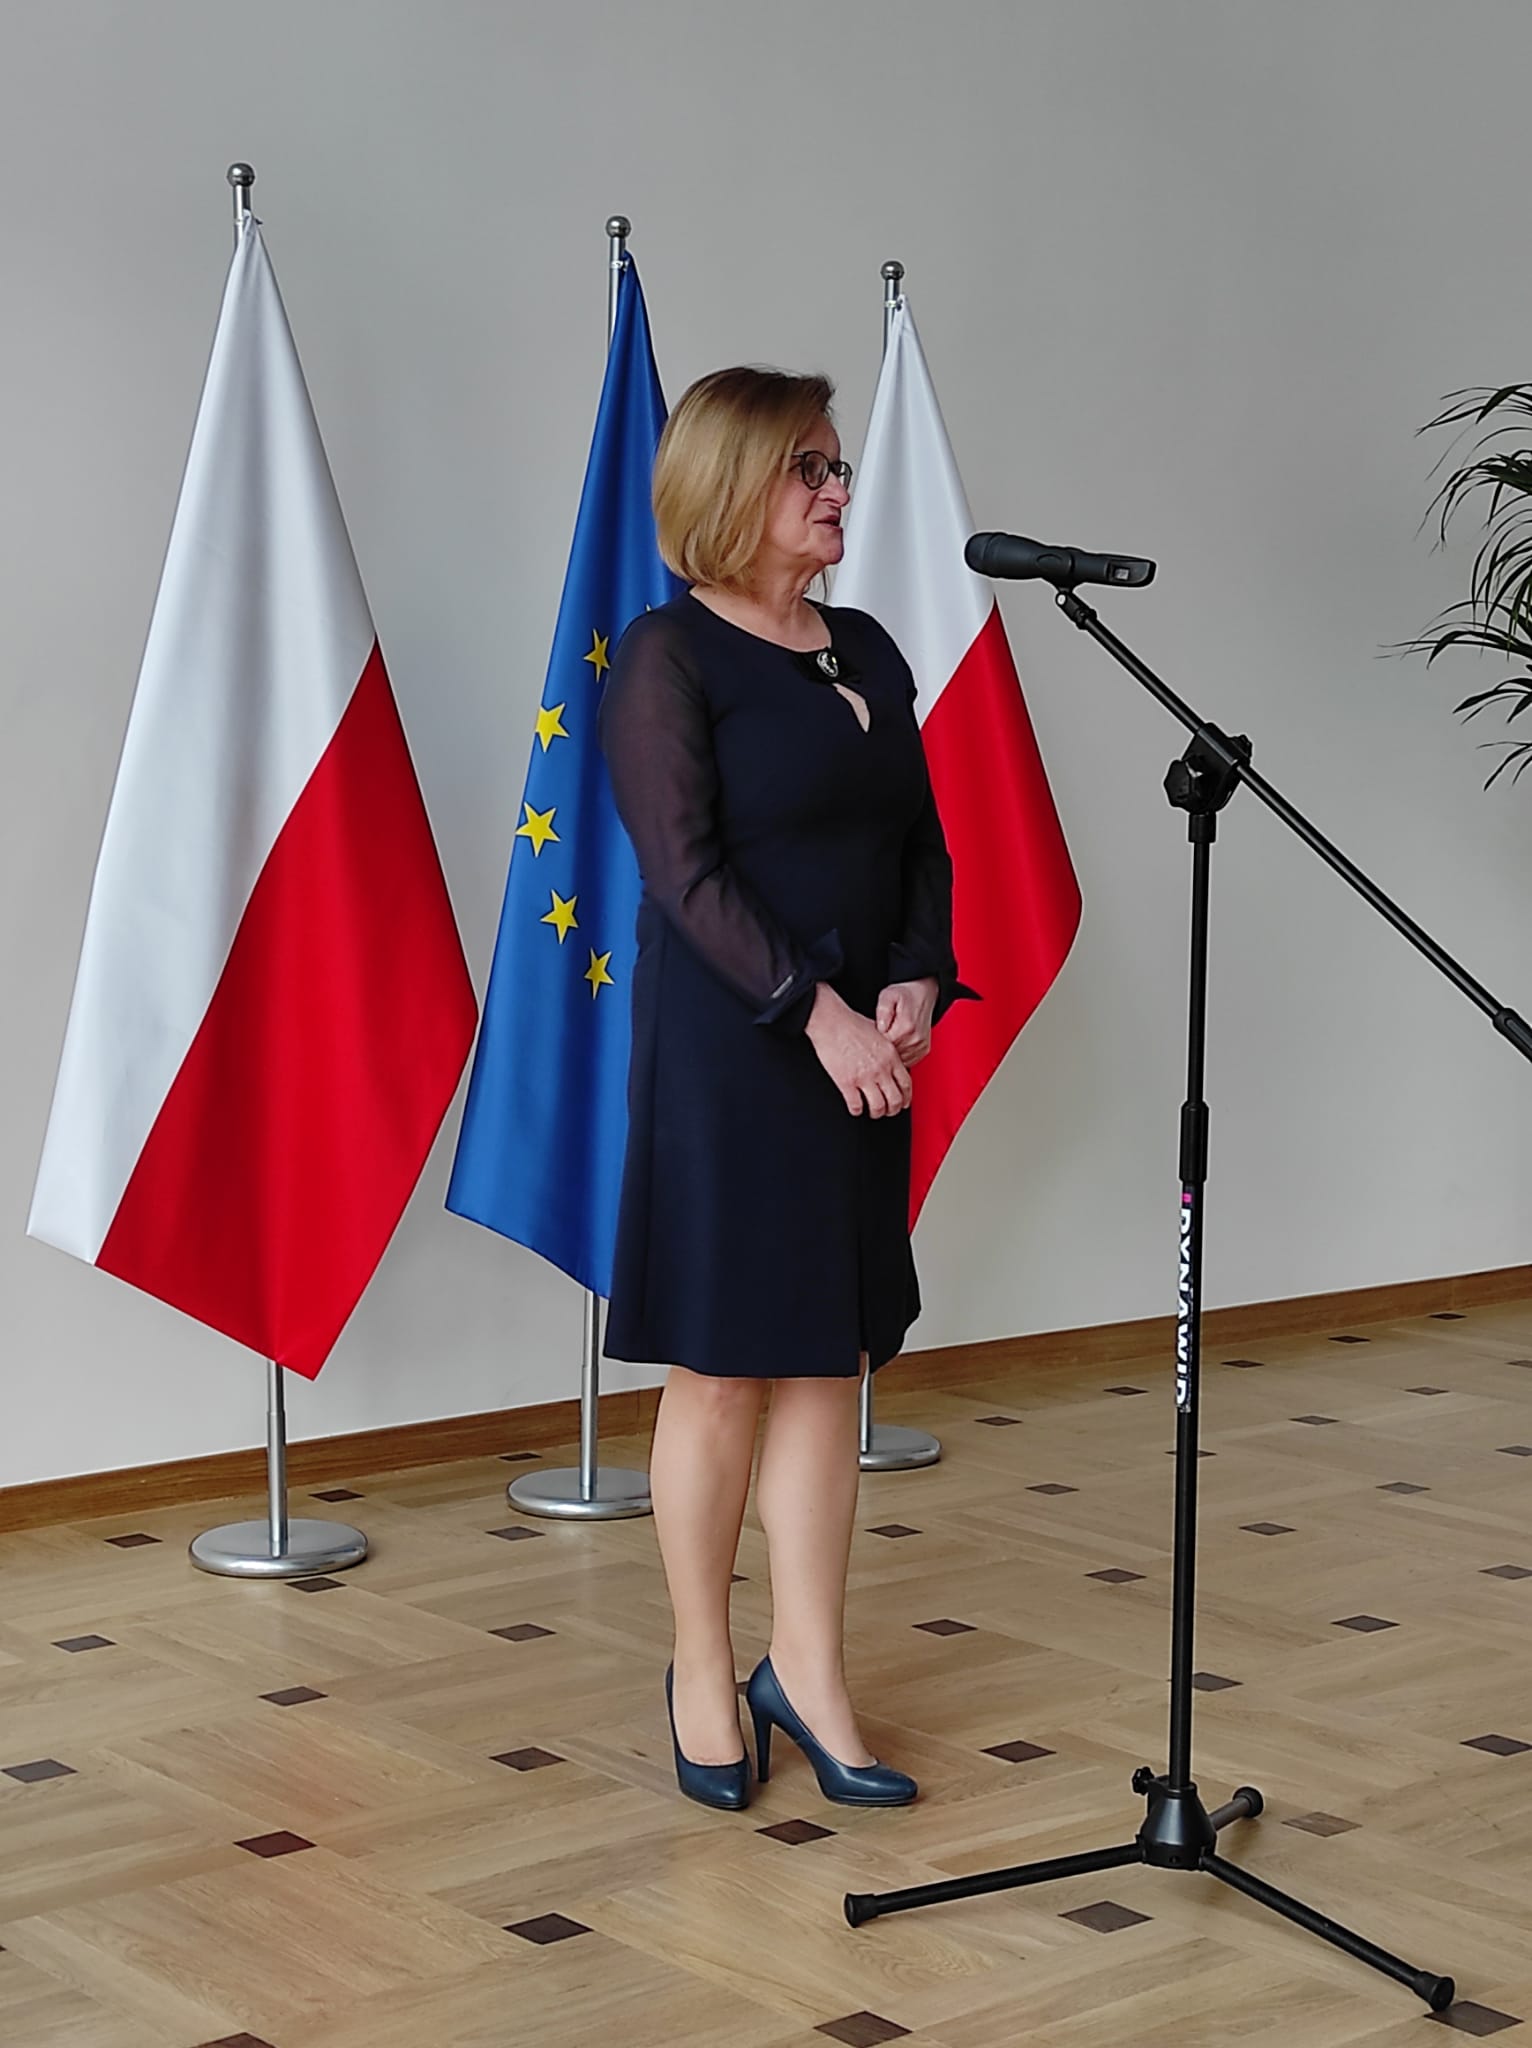 Elegancko ubrana kobieta stoi stoi przed mikrofonem. Za nią znajudją się dwie biało-czerwone flagii pomiędzy którymi znajuje się flaga flaga Unii Europejskiej.